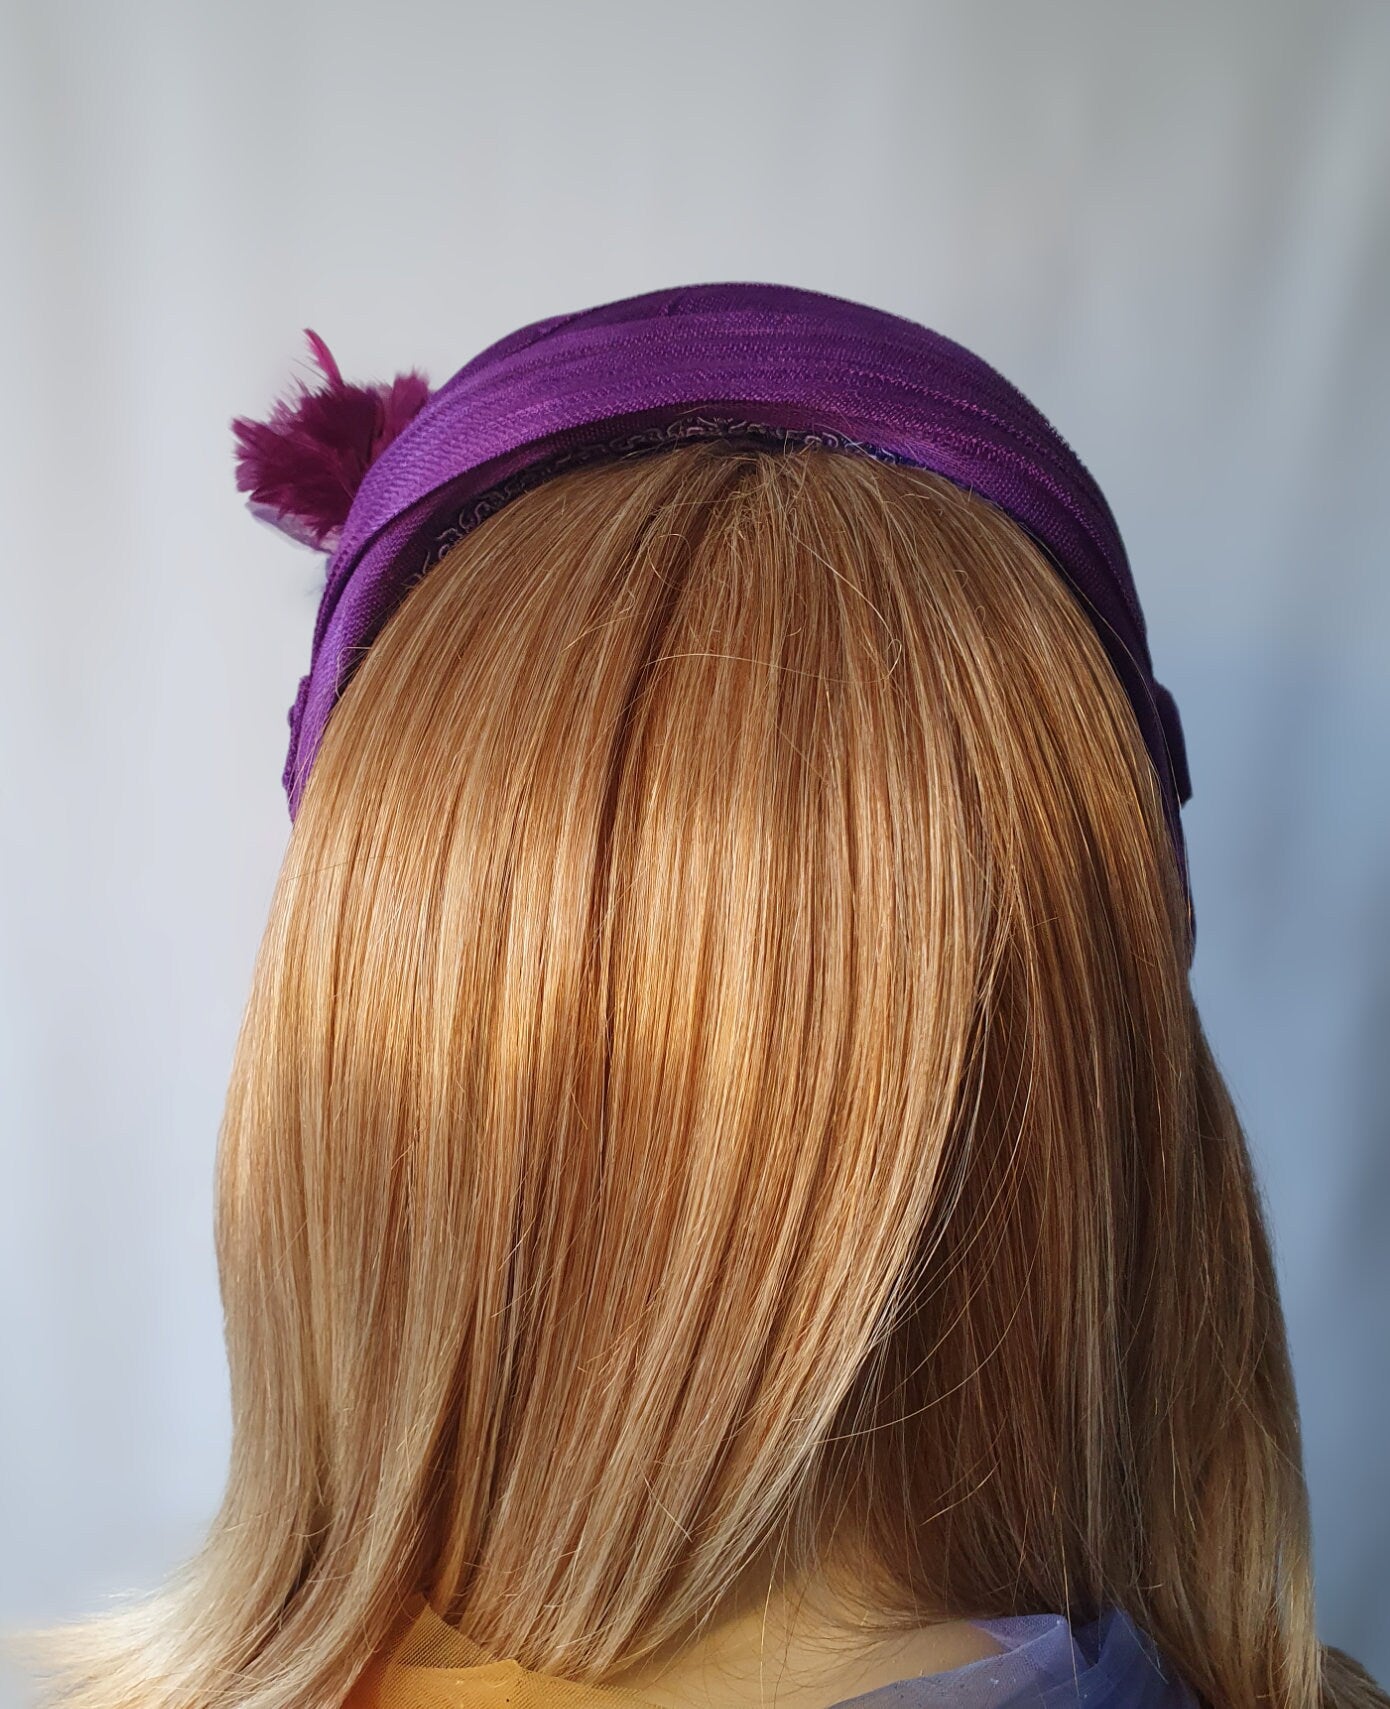 Hoofdband paars abaca zijde met sluier handgemaakt, voor een speciale gelegenheid. Fascinator, Tiara, Haarband